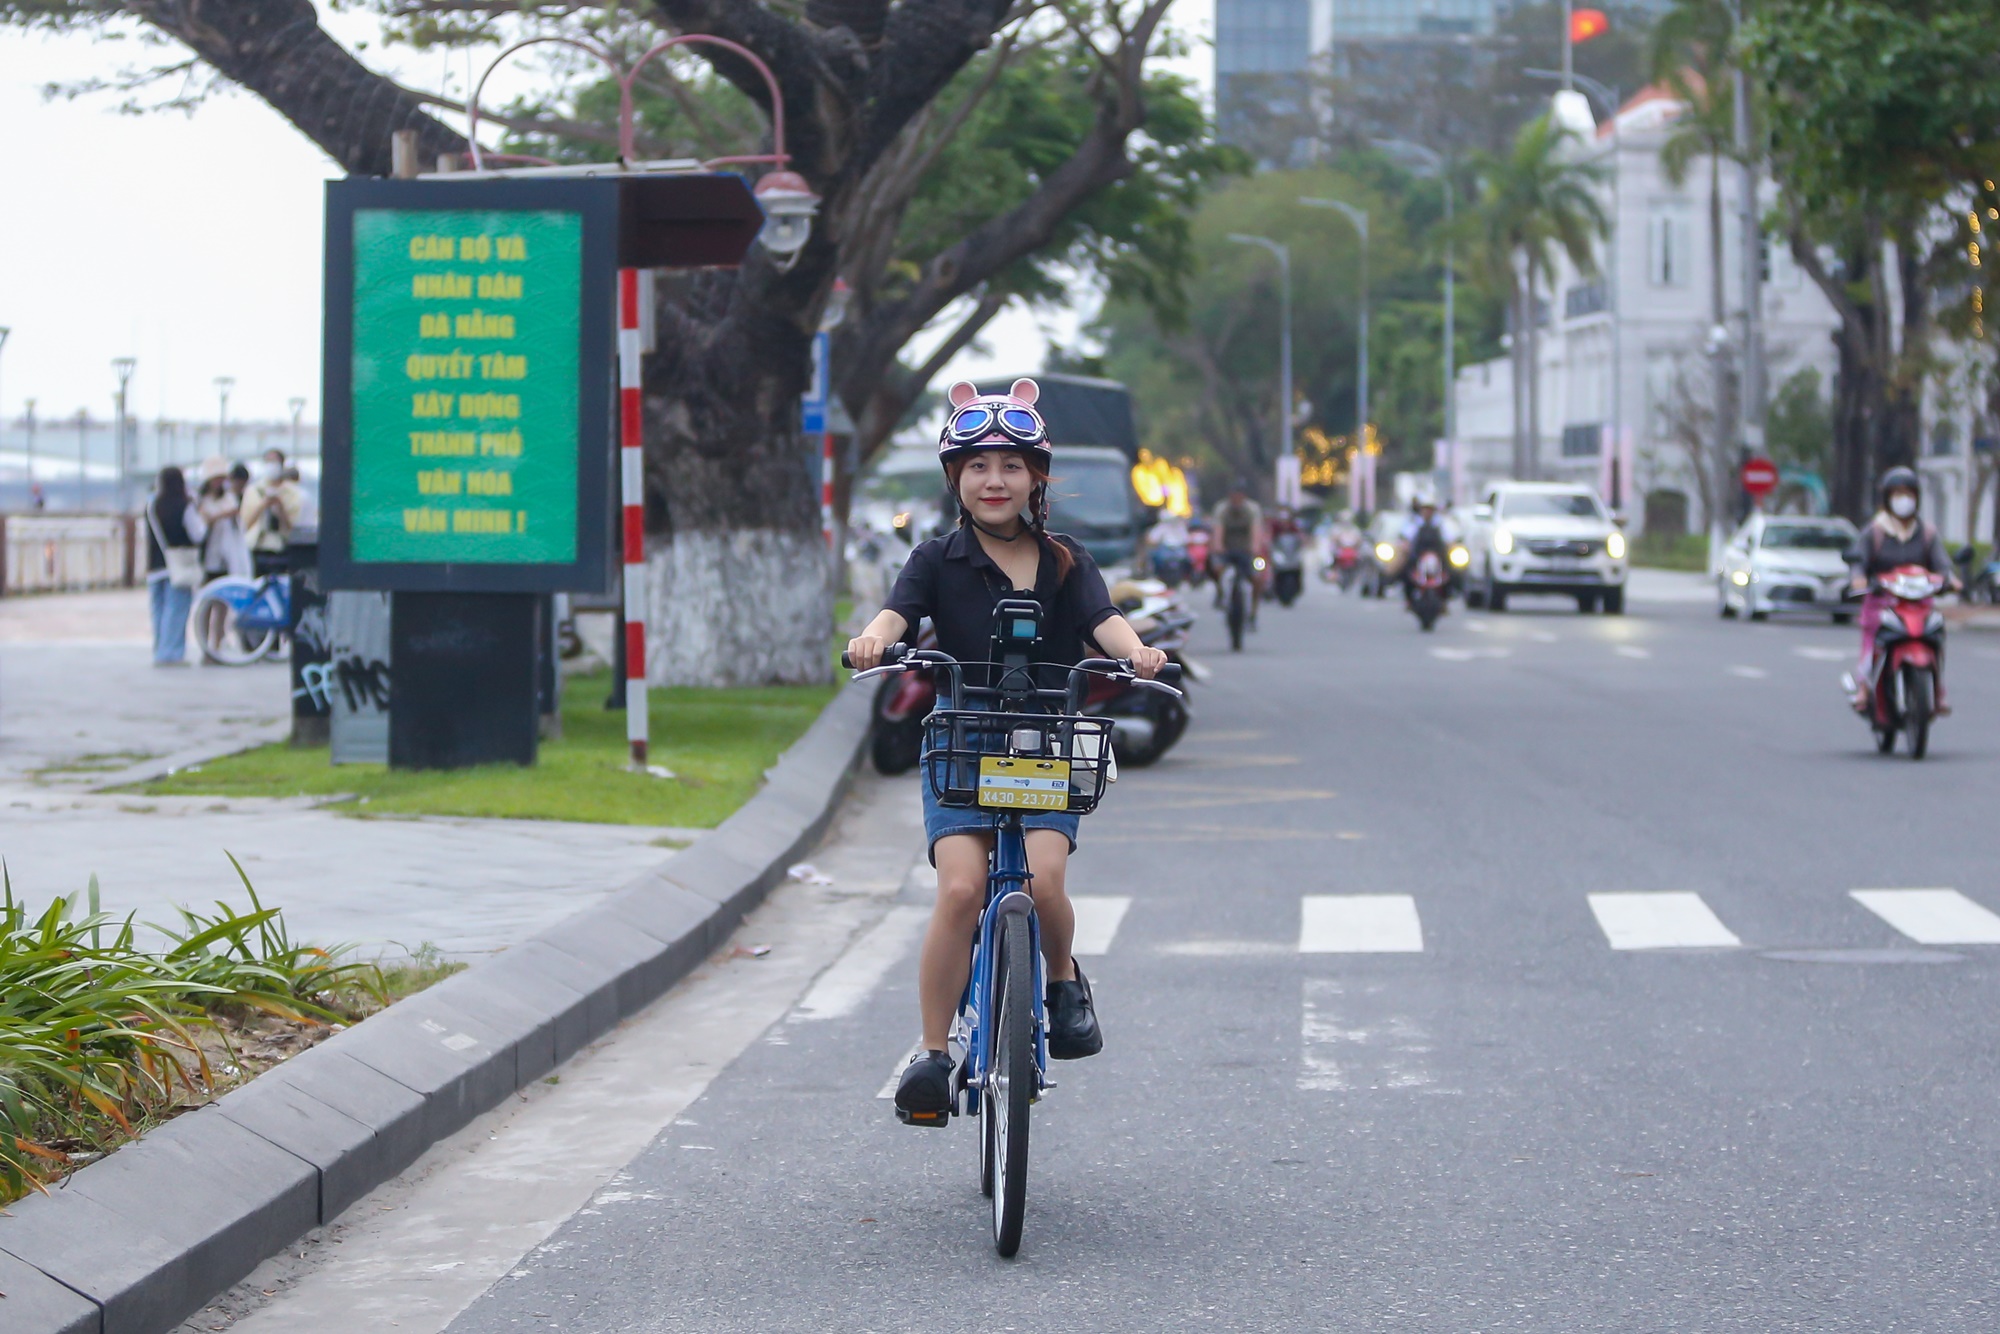 Du khách và giới trẻ thích thú với xe đạp công cộng giá chỉ 5k lần đầu xuất hiện ở Đà Nẵng - Ảnh 6.